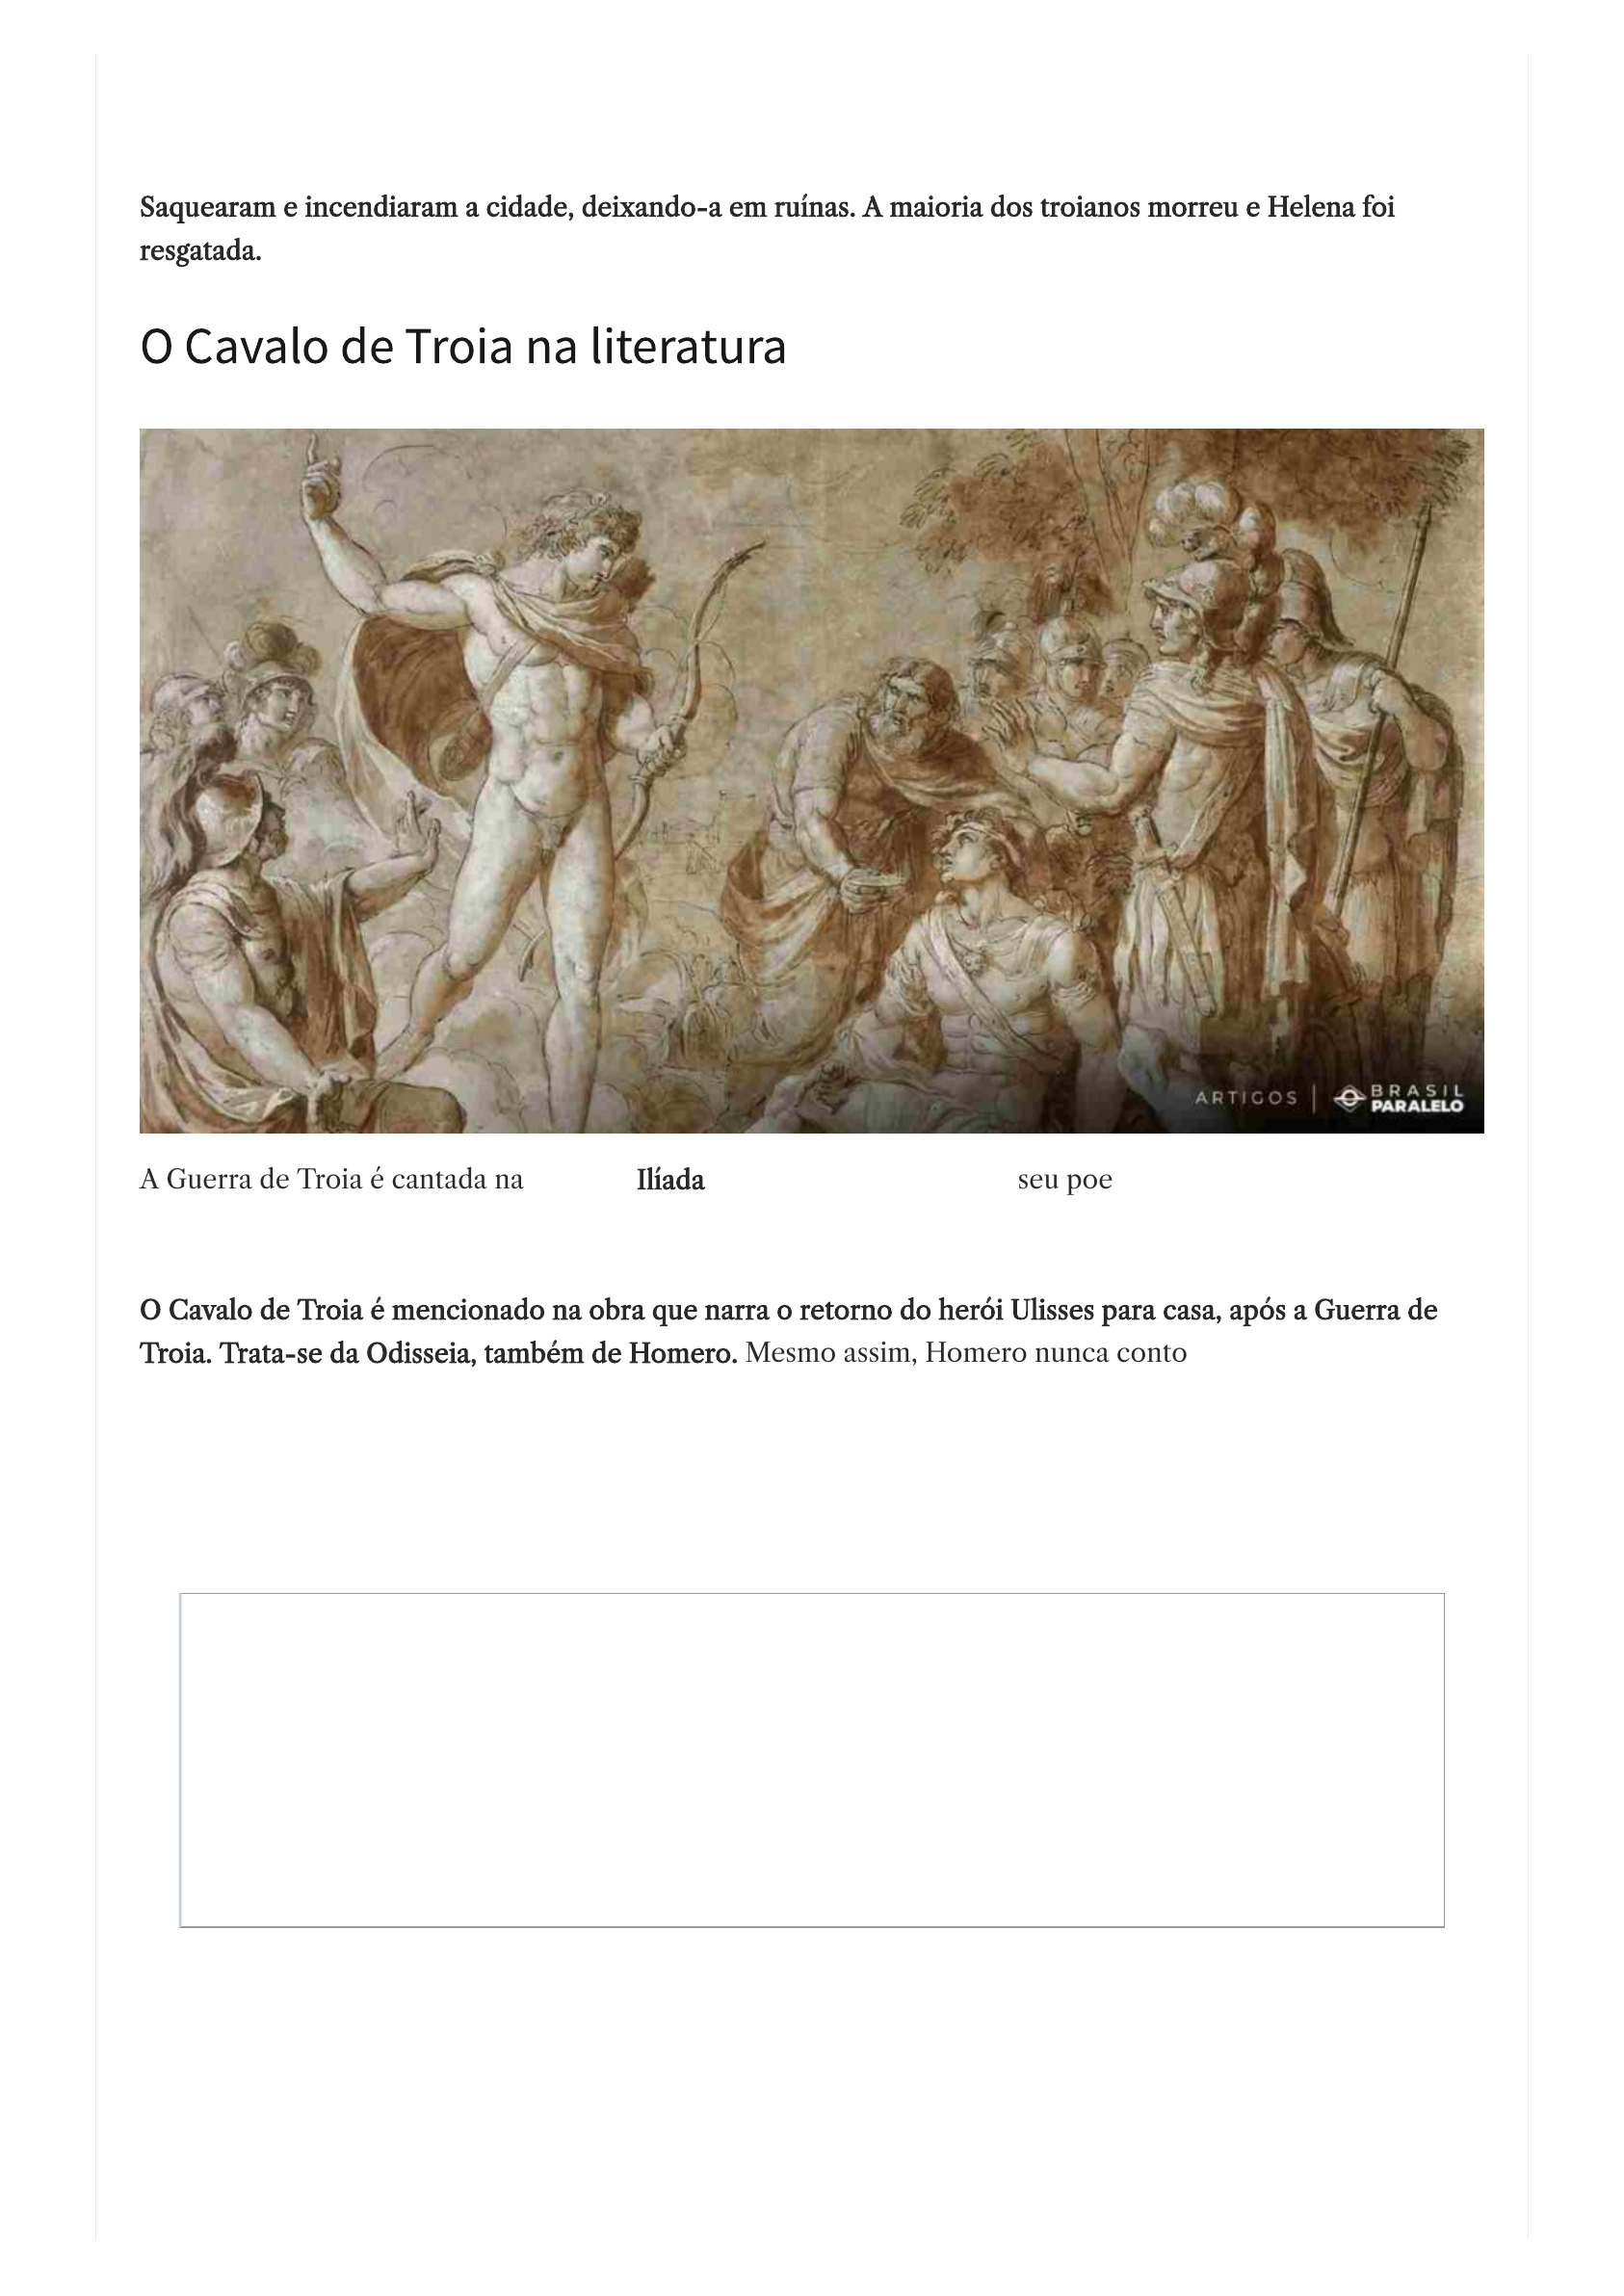 Exercícios Cavalo de Troia, PDF, Paris (mitologia)